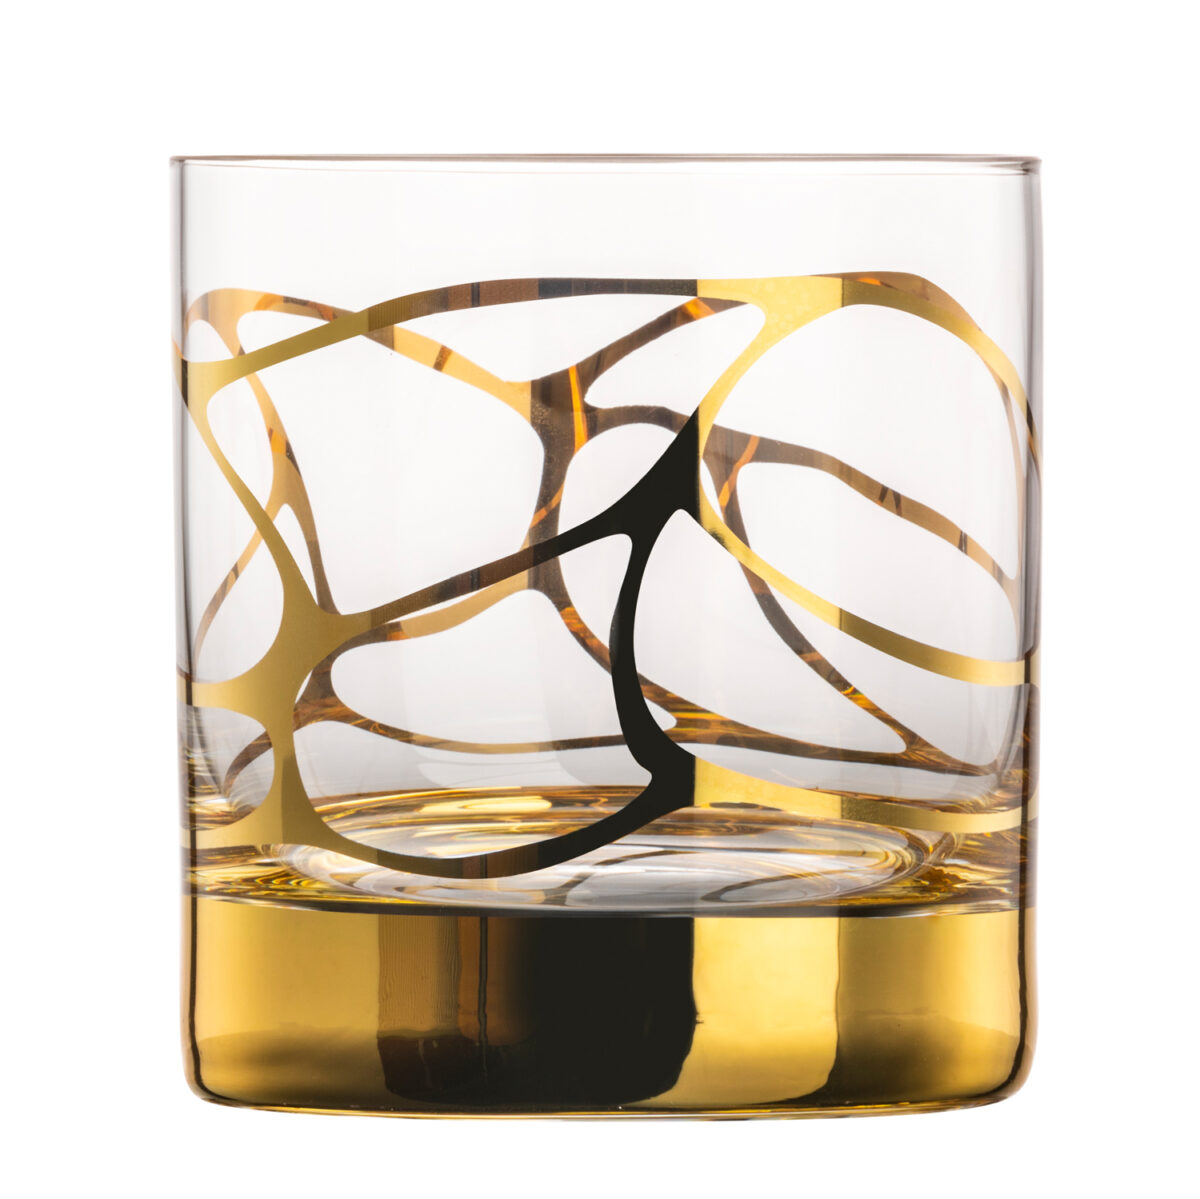 STARGATE 2 whiskey crystal glasses